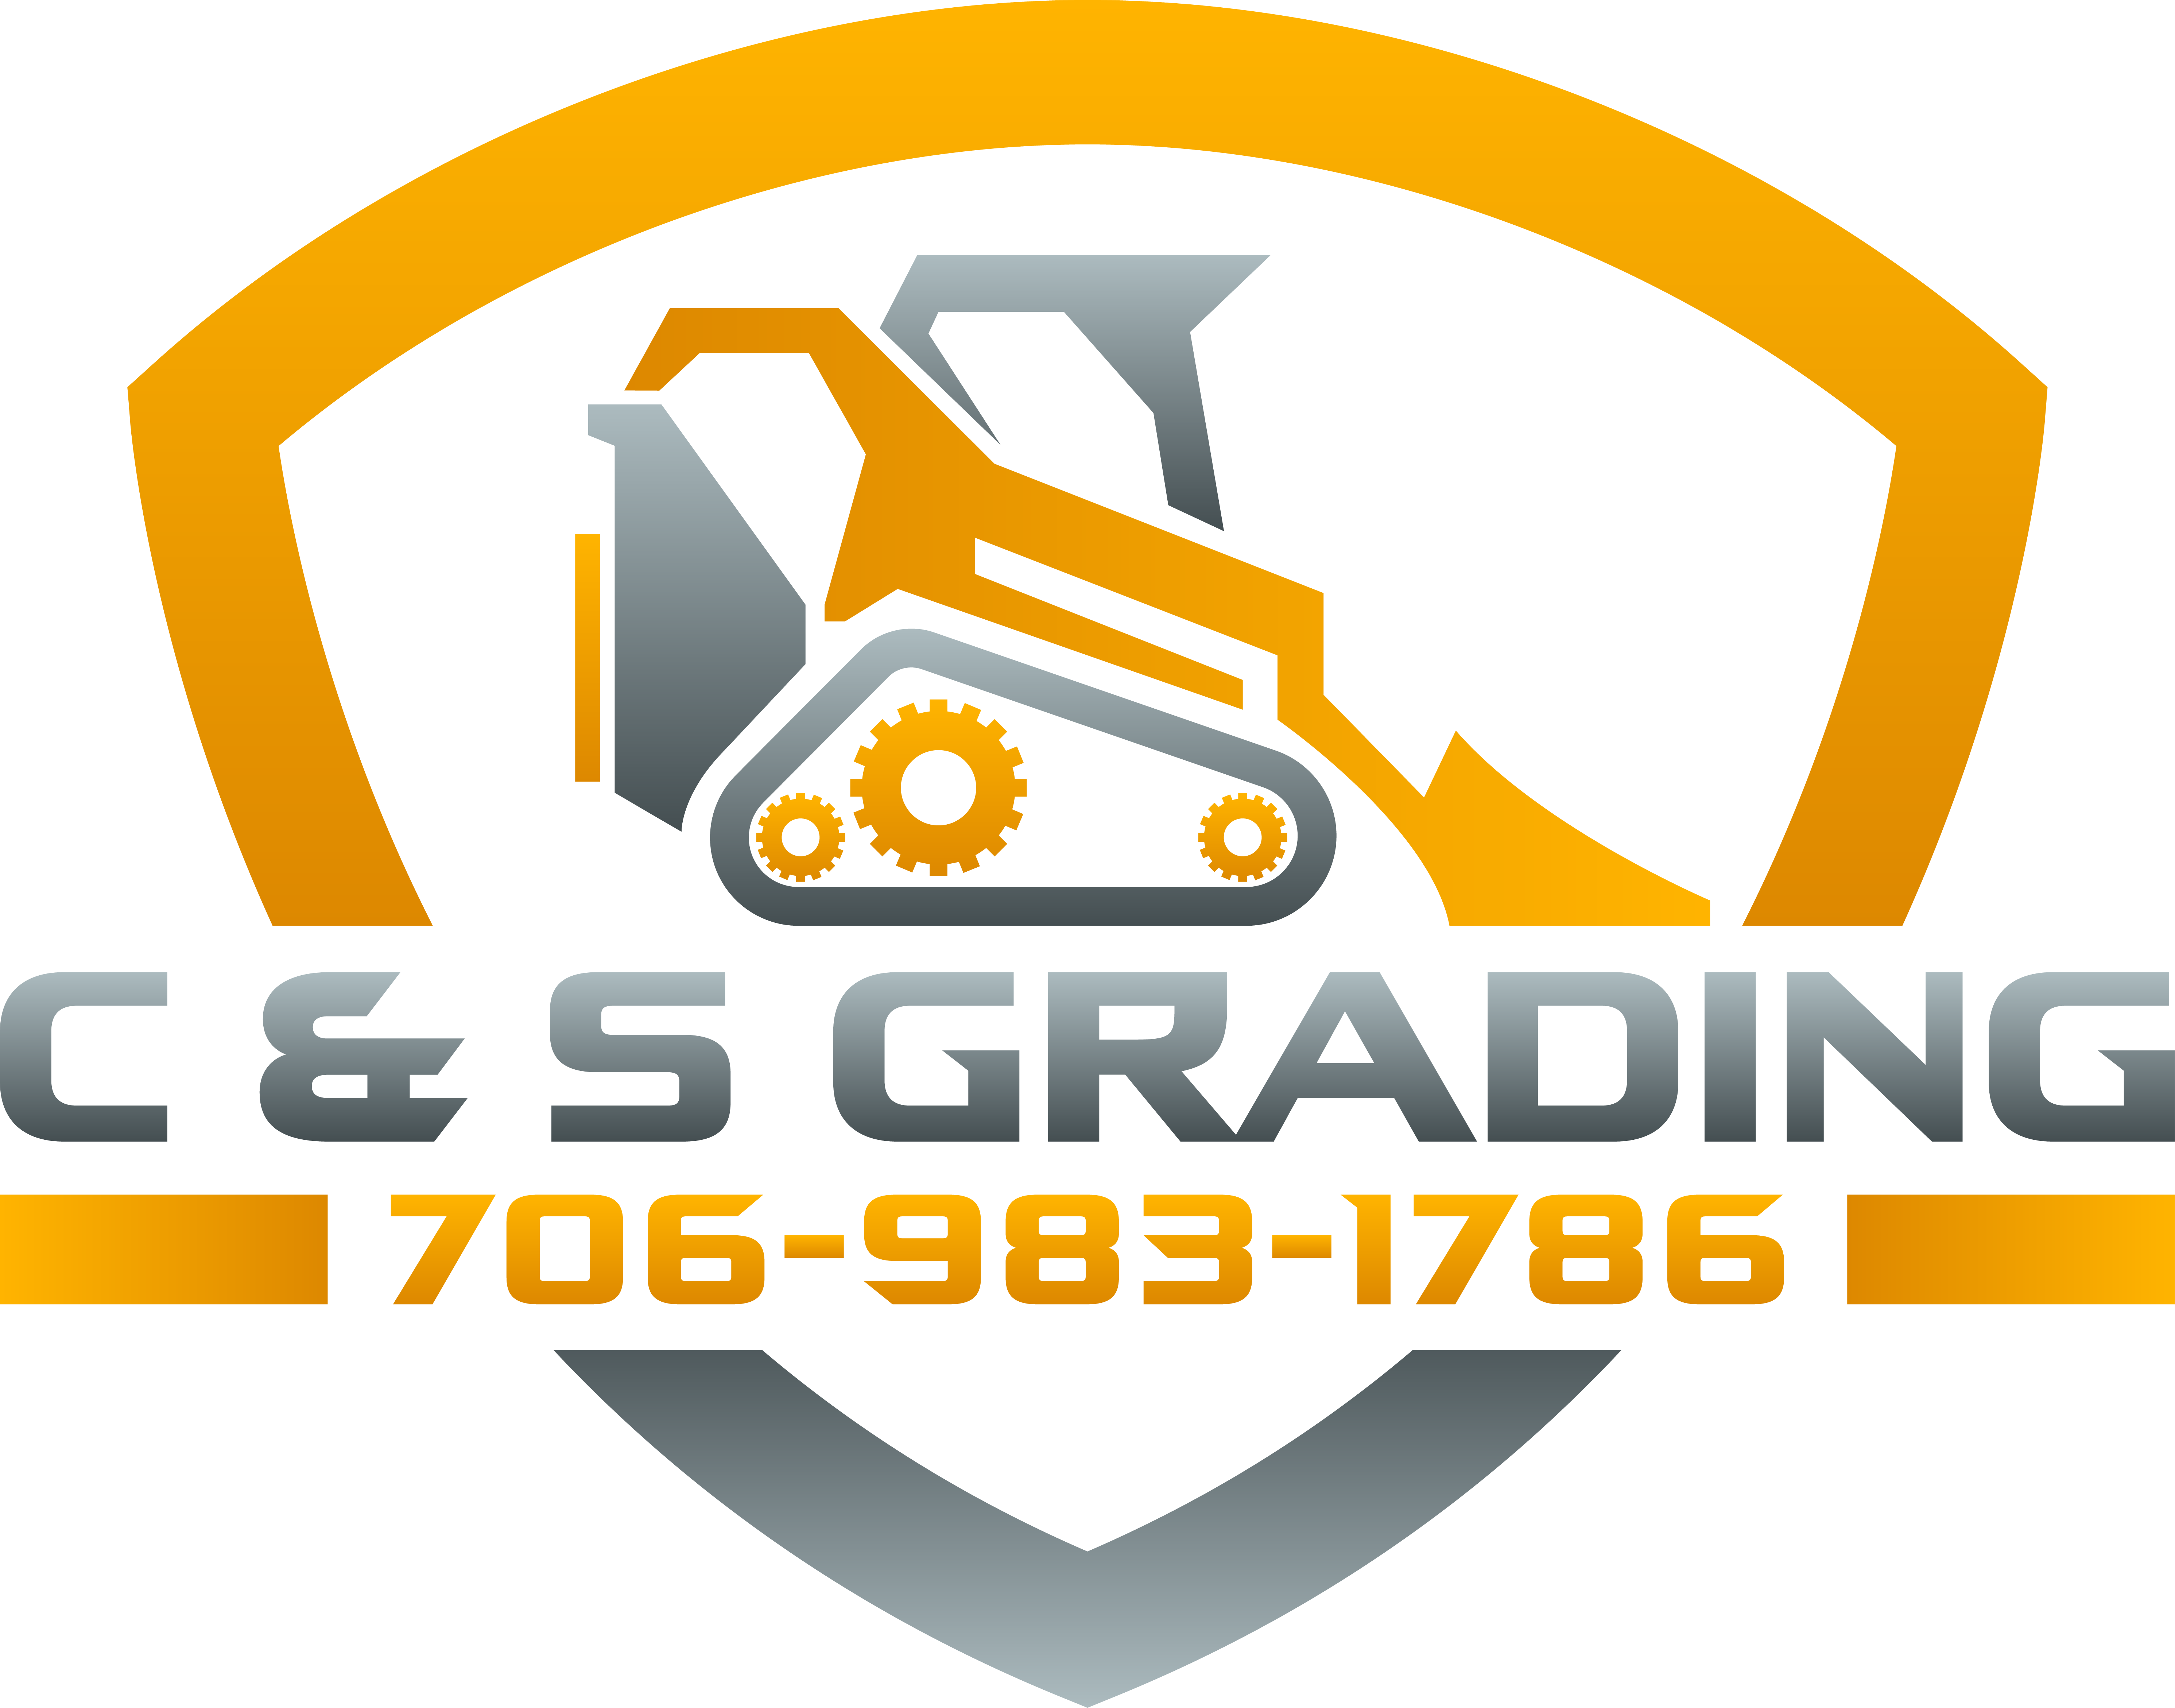 C&S Mobile Welding and Grading LLC Logo